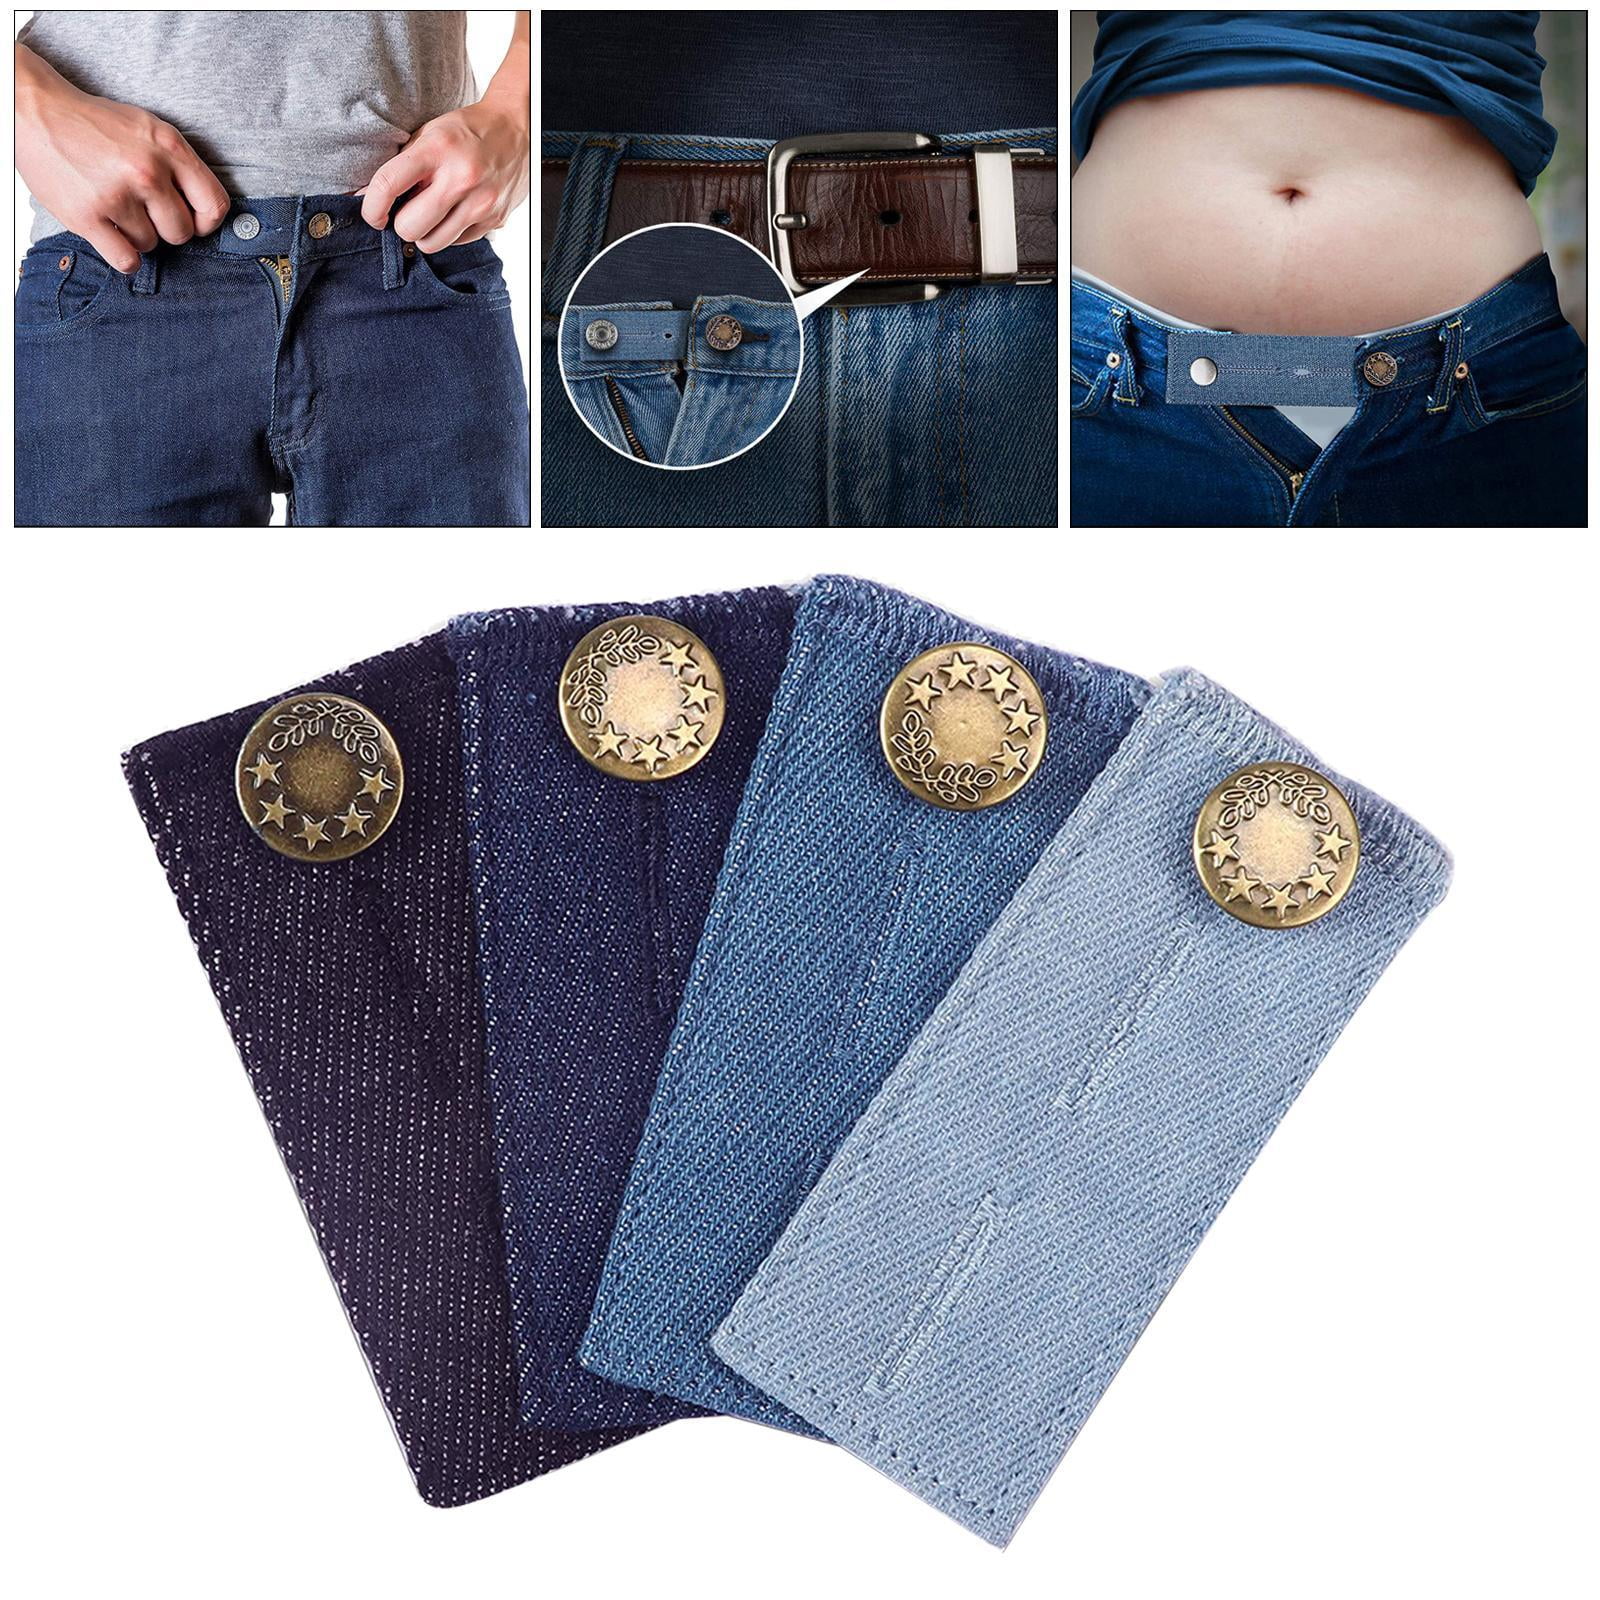 Flexible Button Extender for Pants Waist Extenders for Pants for Men and  Women (10-Piece Multiple Colors) Blue Denim Jeans Button Extender, Black 